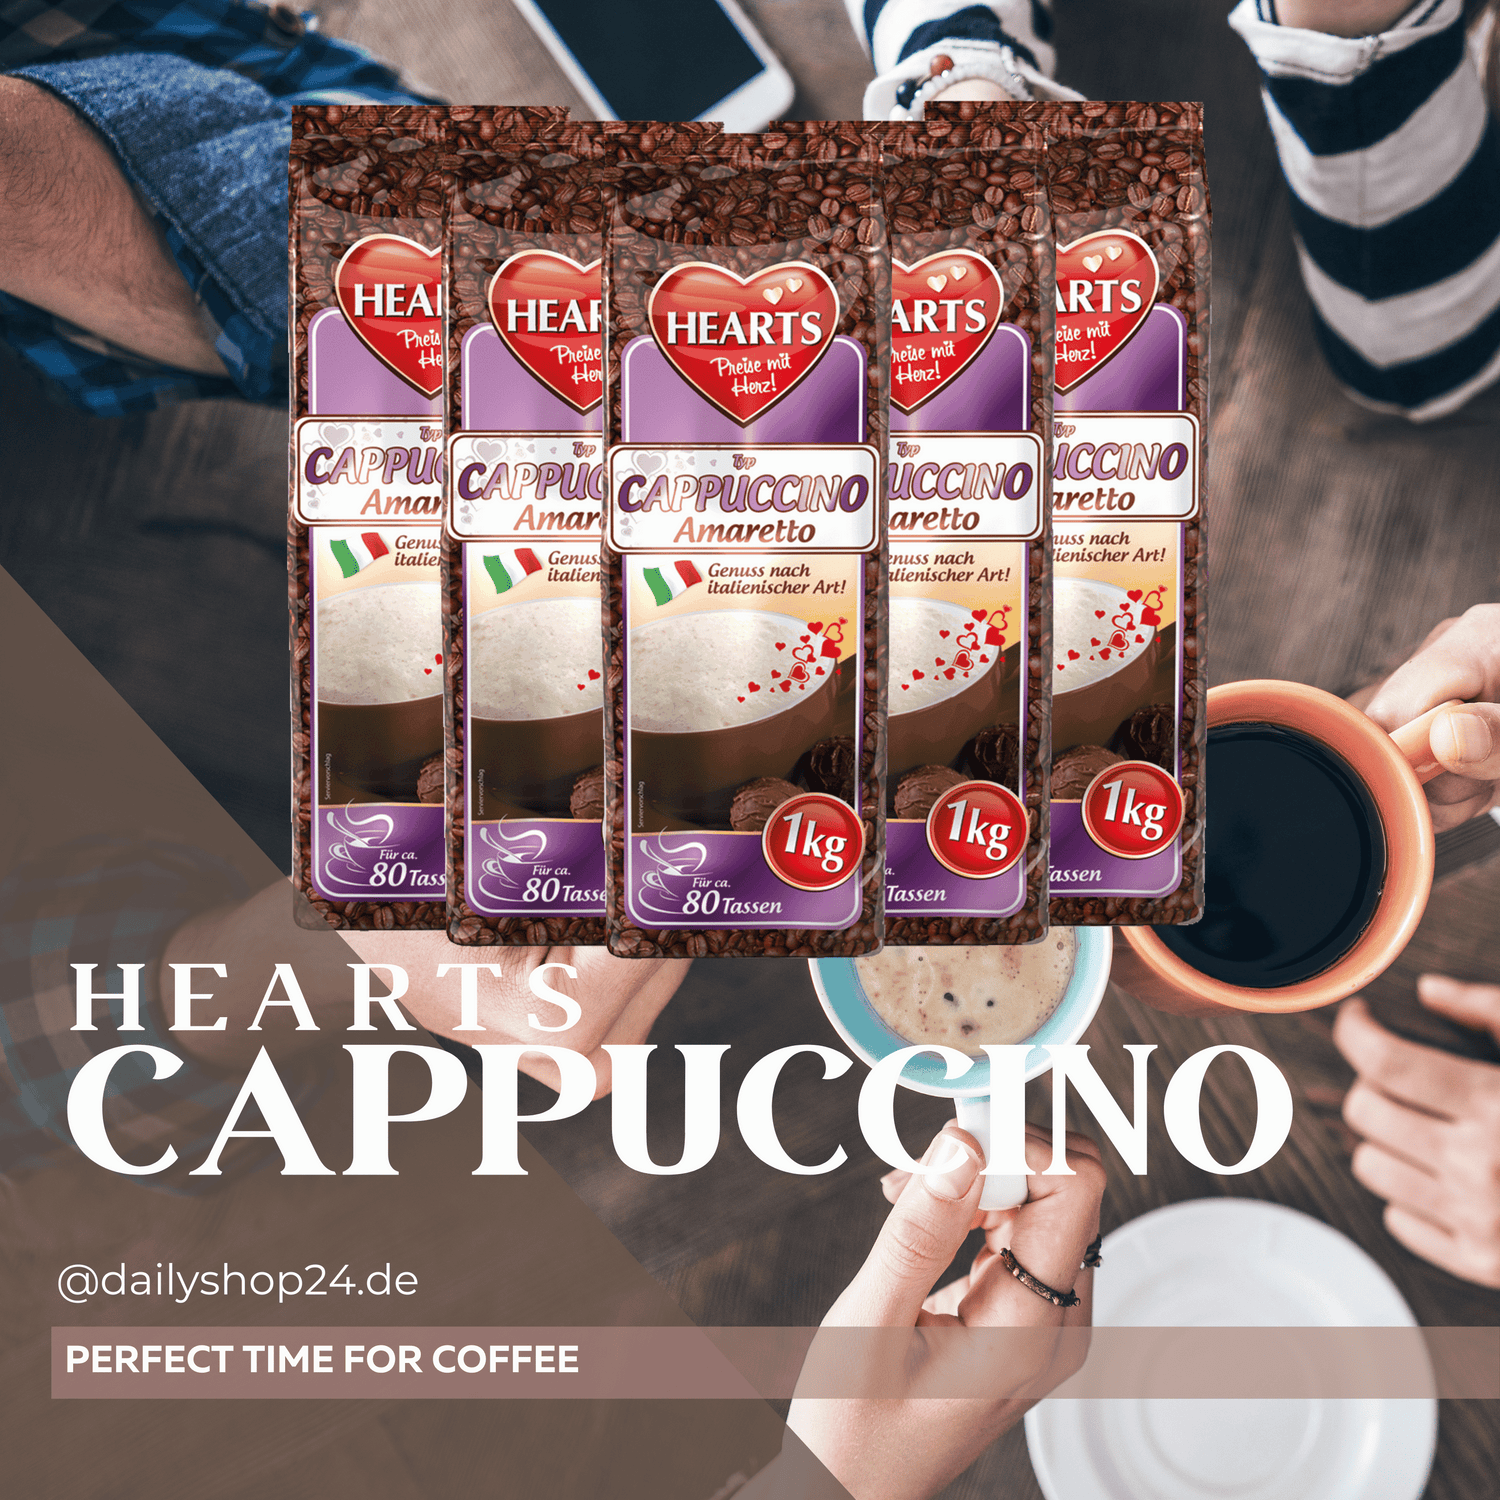 Hearts Cappuccino Amaretto 5er pack mit 5kg Instantpulver für kaffee mit Amarettogeschmacj